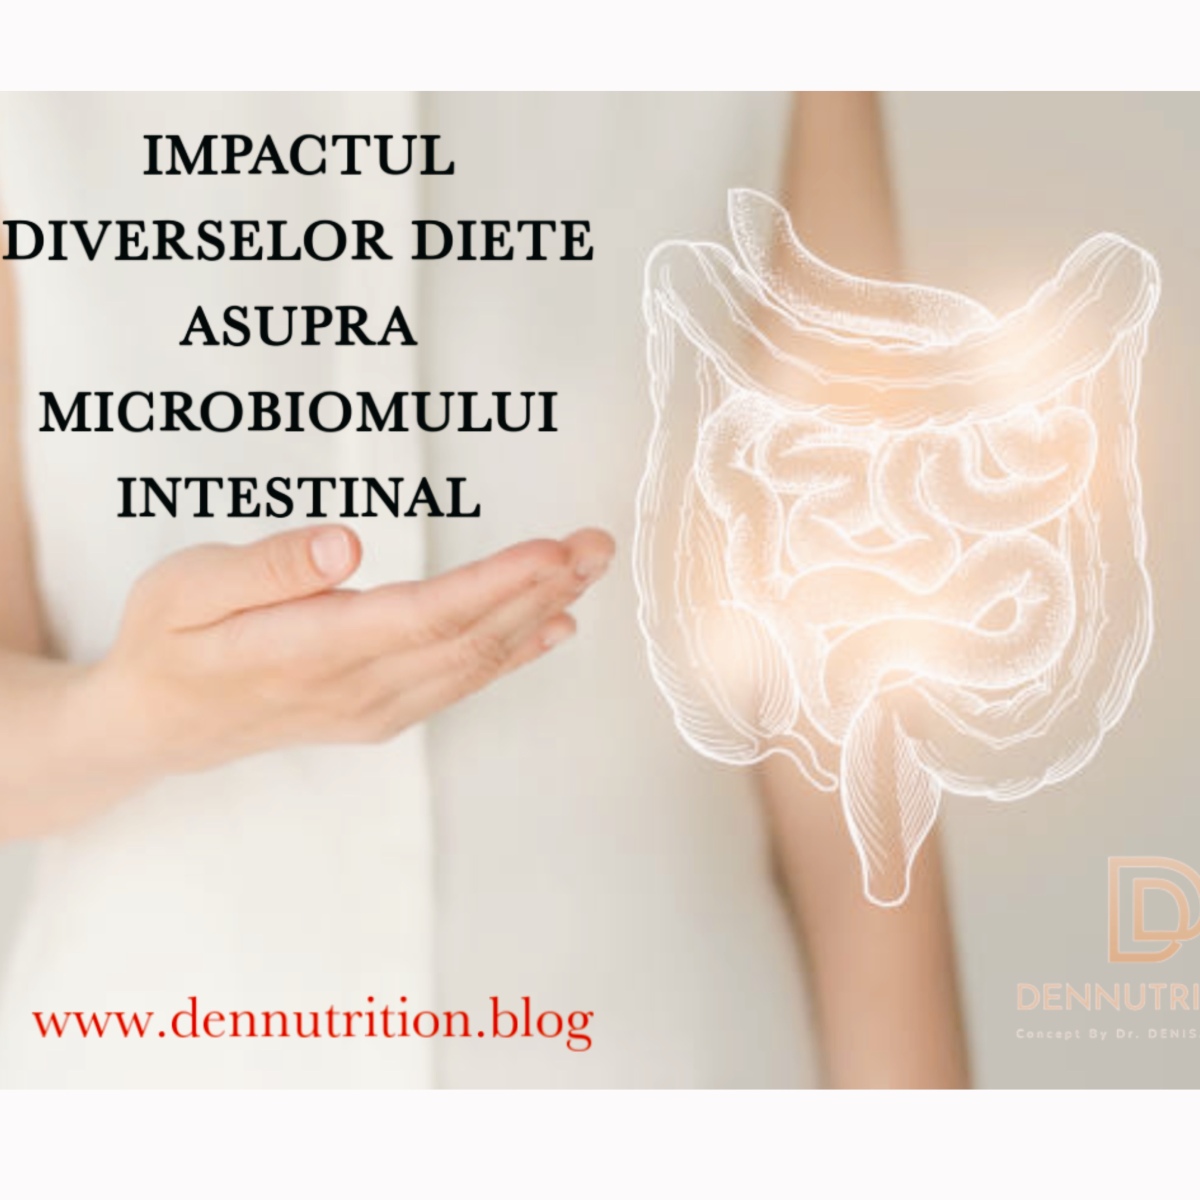 ESTE DIETA IMPORTANTA PENTRU MICROBIOMUL INTESTINAL ?